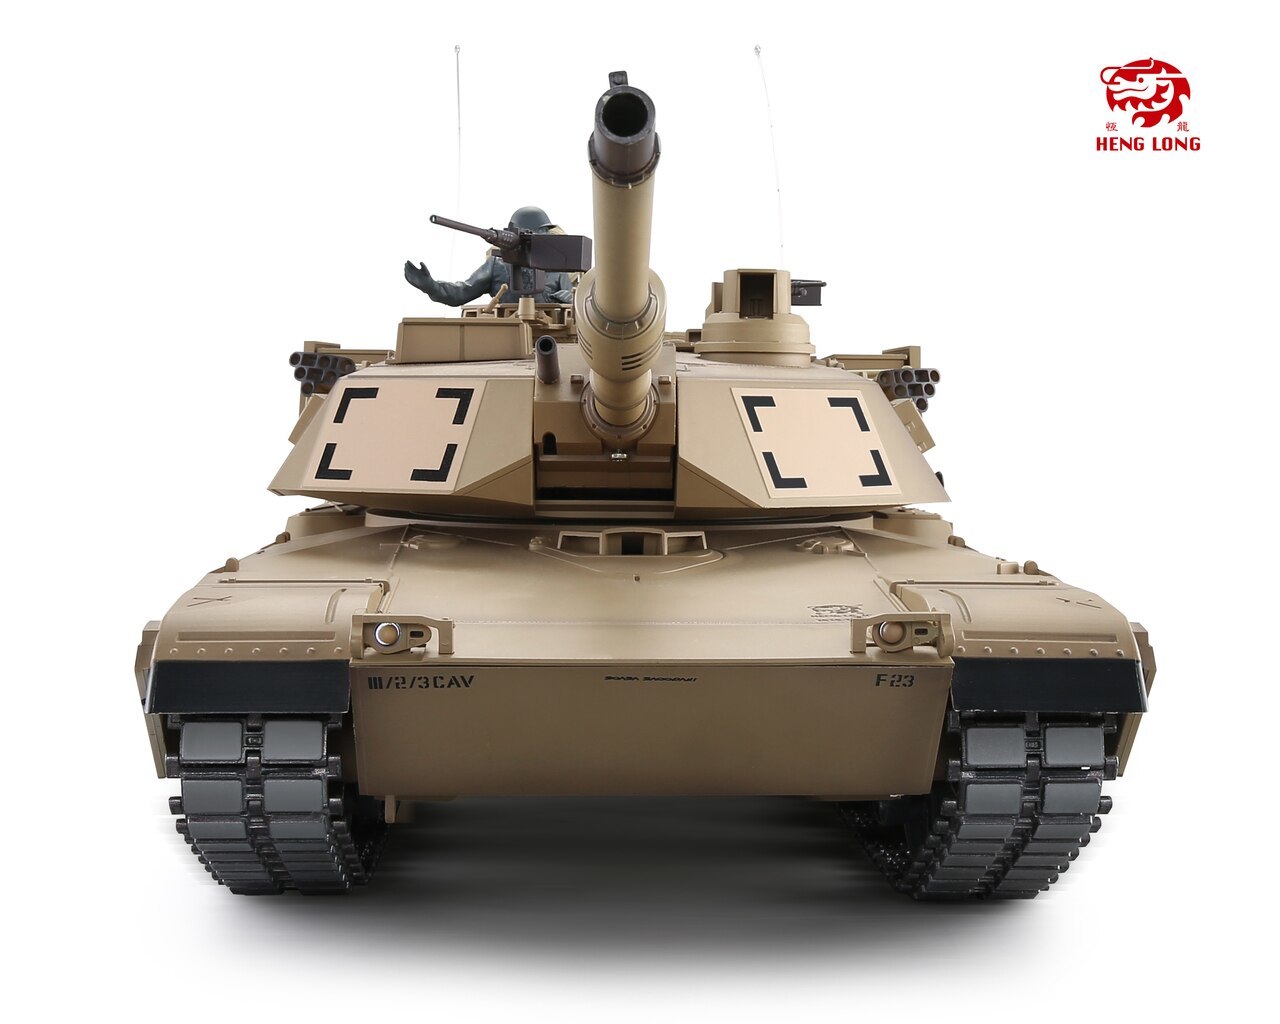 Купить танк heng long. Радиоуправляемый танк Heng long Абрамс. Танк Heng long m1a2 Abrams (3918-1pro) 1:16 63 см. М-1 Абрамс Хенг Лонг. Радиоуправляемый танк Heng long us m1a2 Abrams Pro v6.0 1:16 RTR 2.4GHZ.